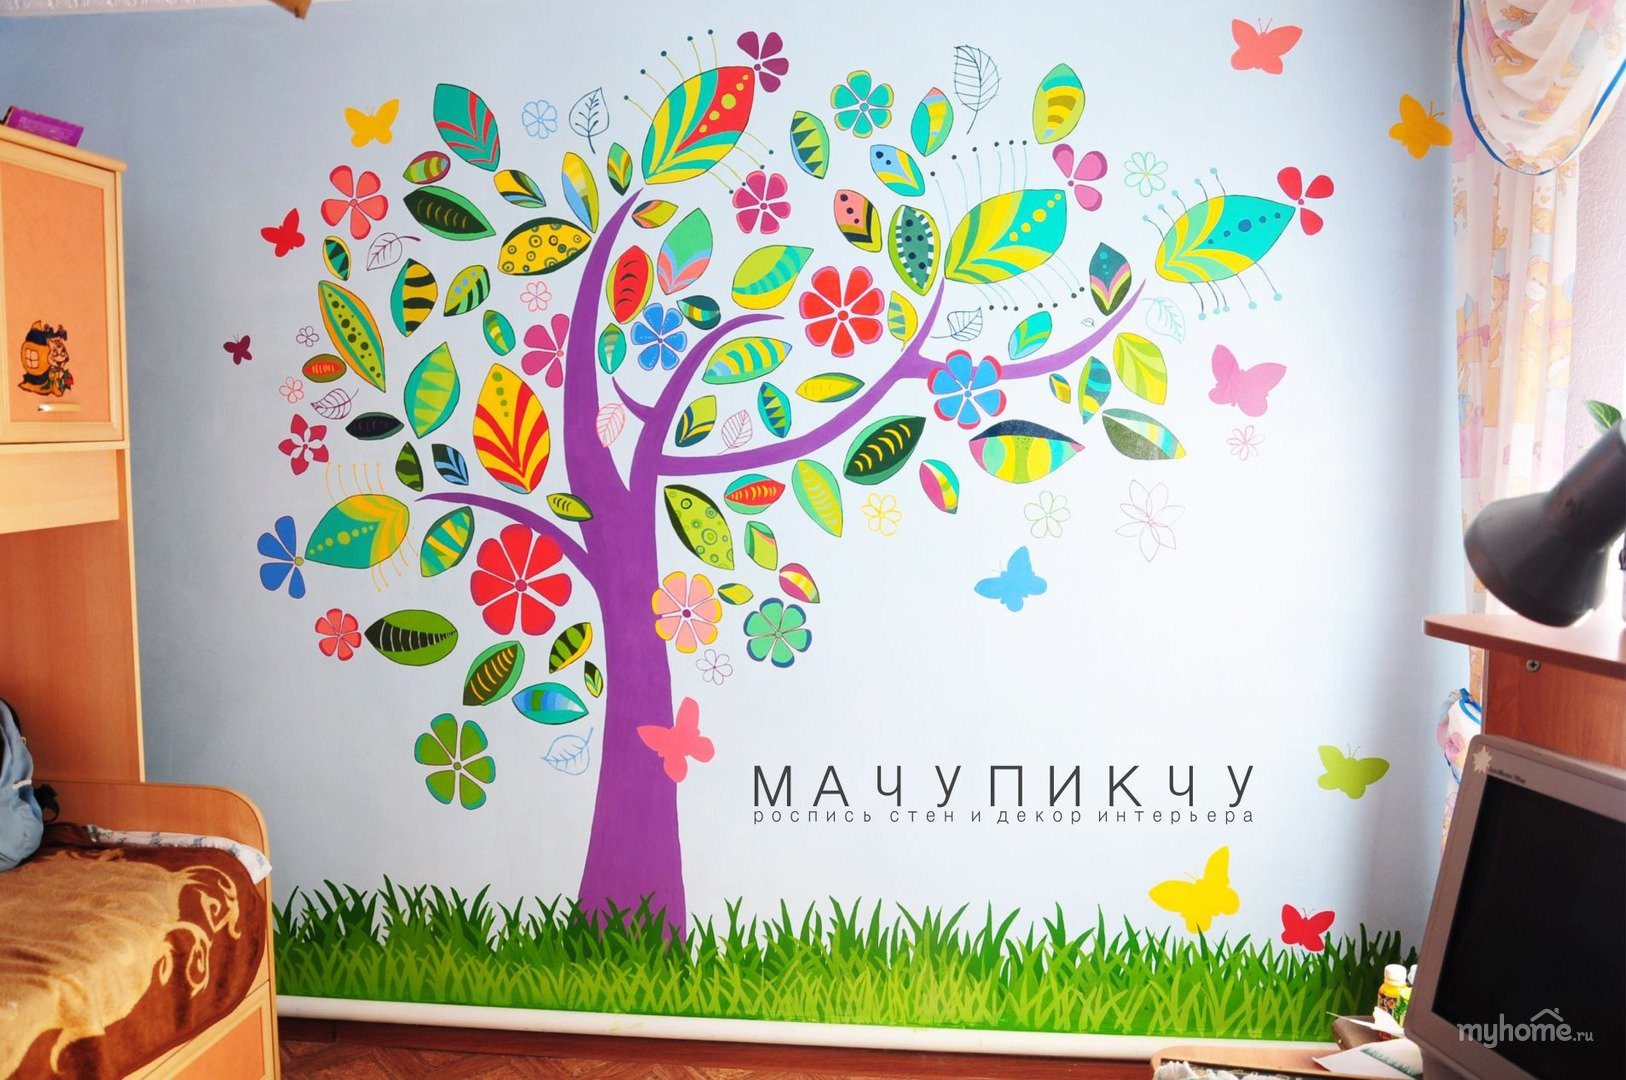 Оформление группы стены. Декор стен в детском саду. Украсить стену в детском саду. Декорирование стен в детском саду. Дерево на стене в детском саду.